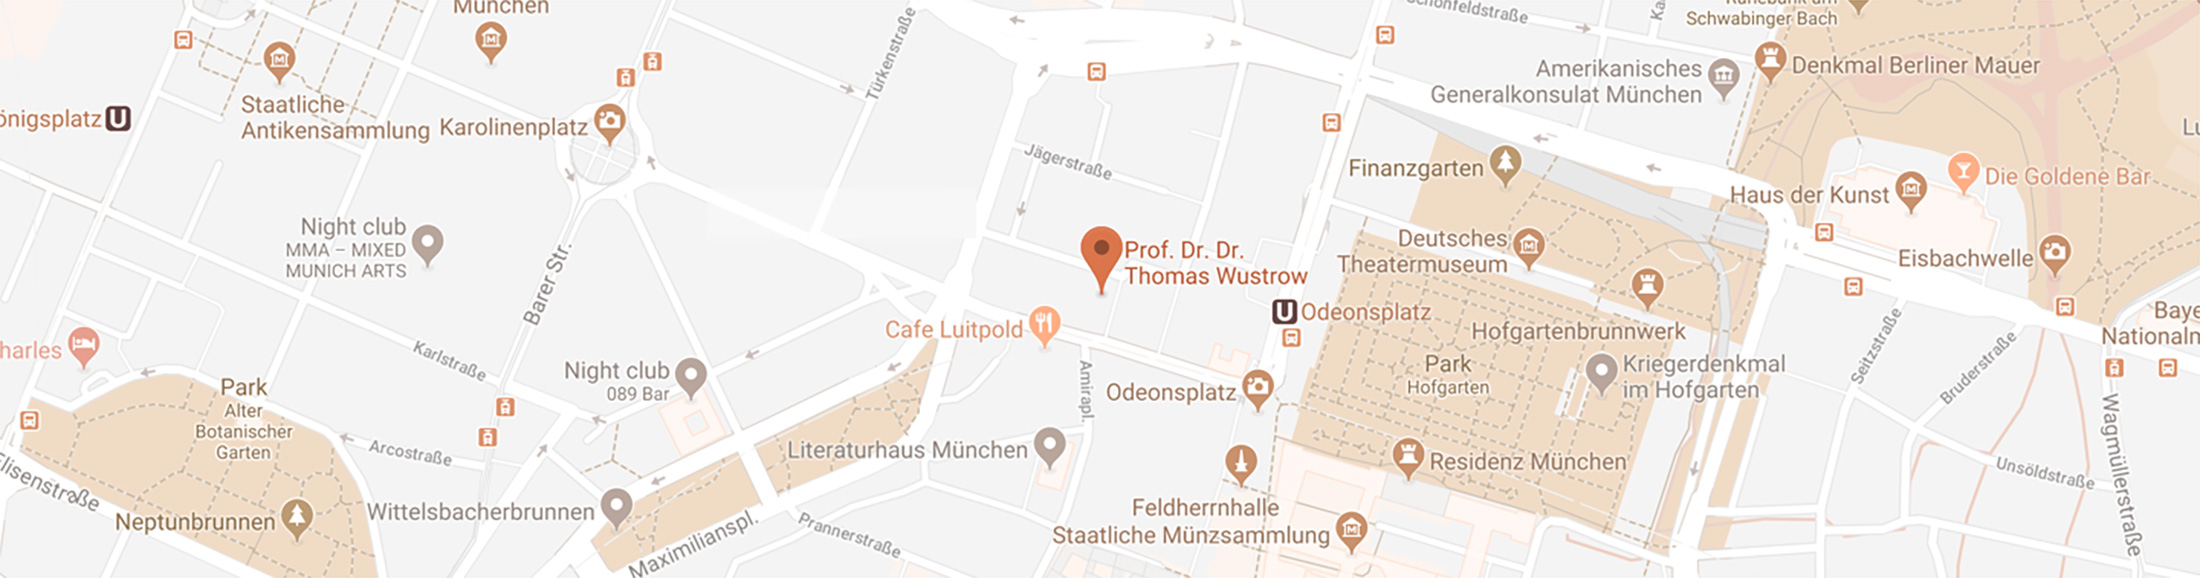 Map View - Haut Gesichtsaugmentation mit Fillern - HNO München